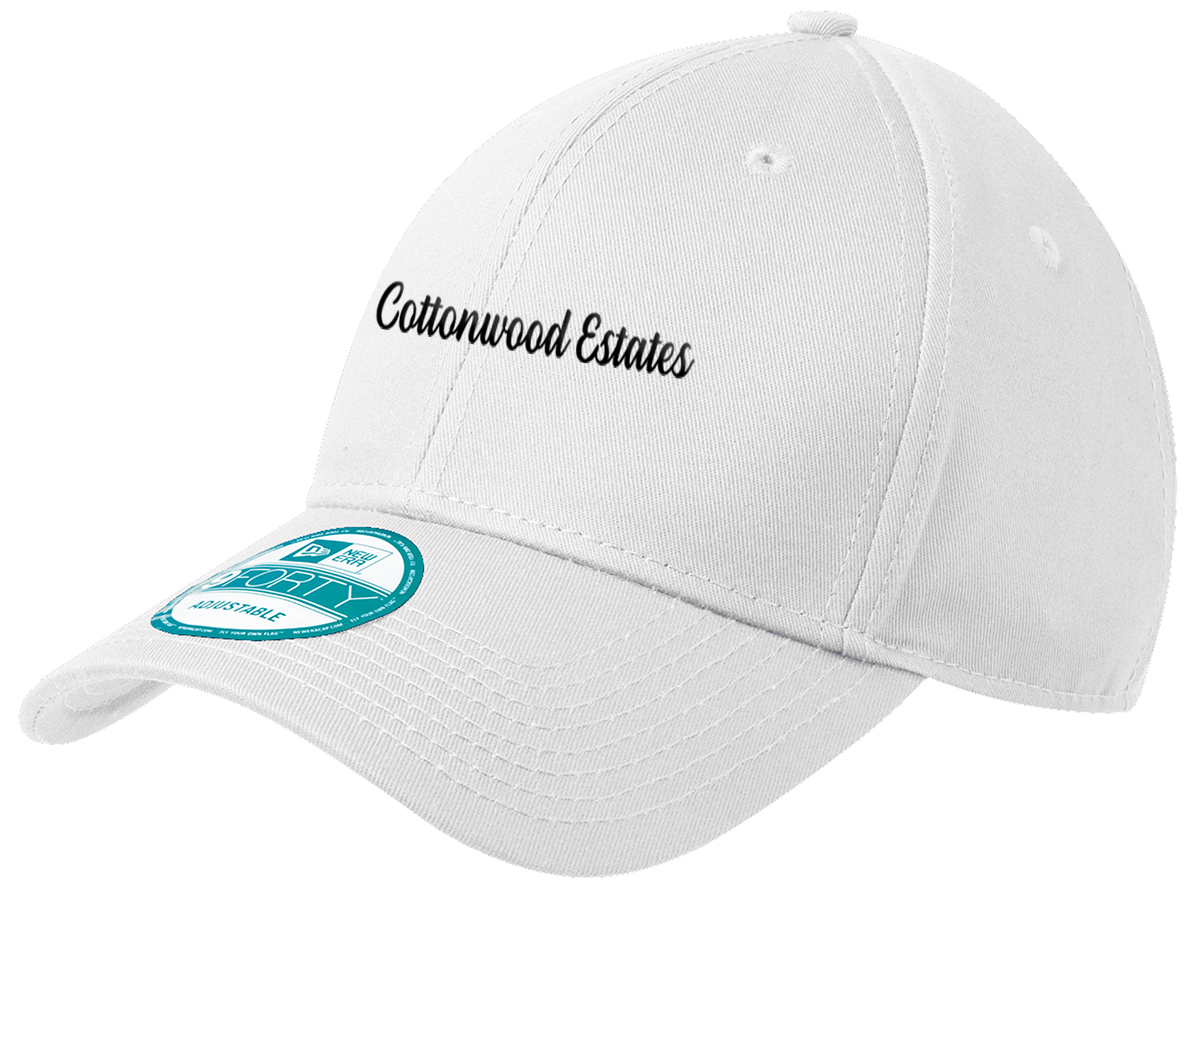 Cottonwood Estates  - New Era® - Adjustable Structured Cap